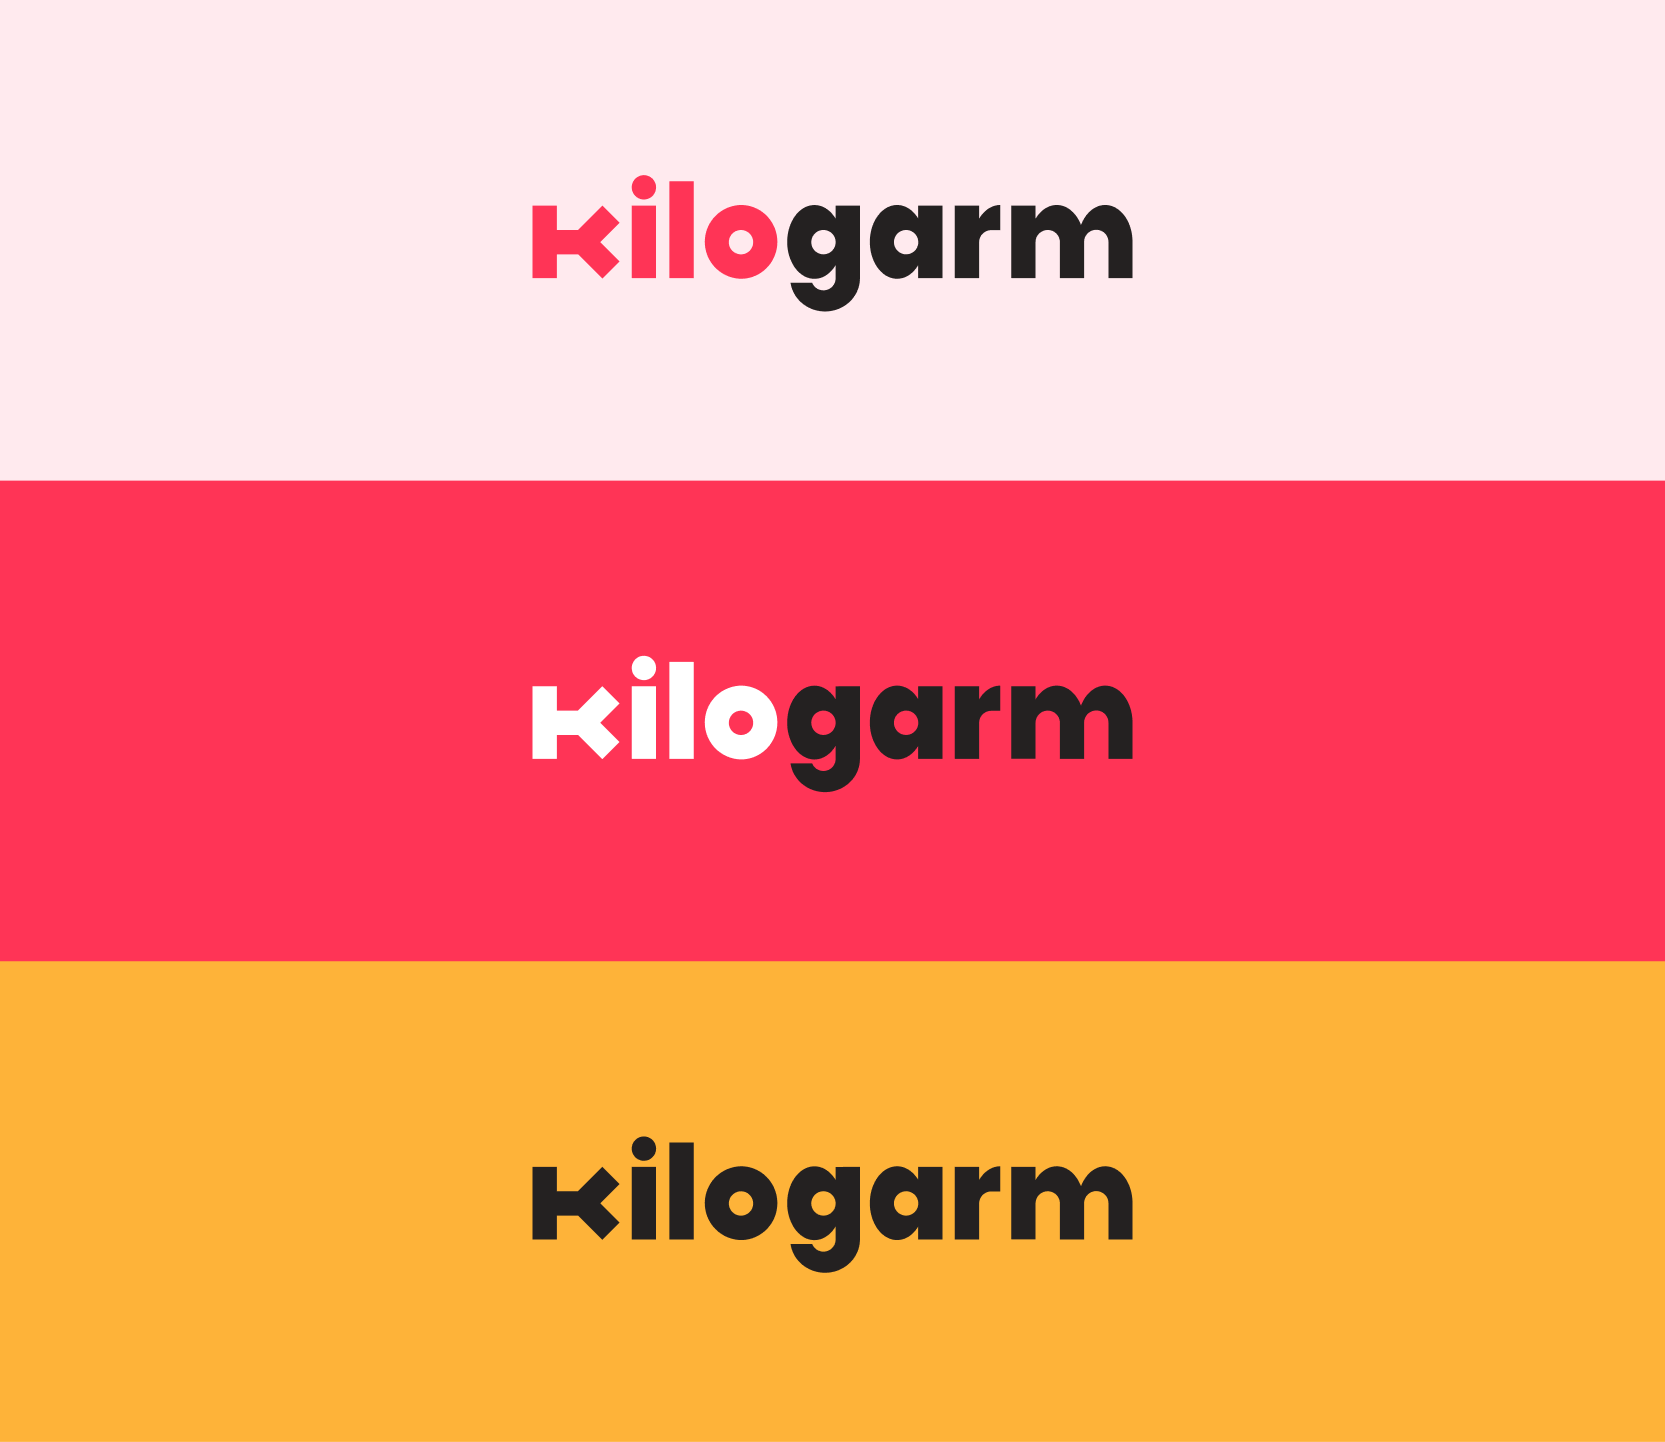 Kilogarm Logo on Backgrounds